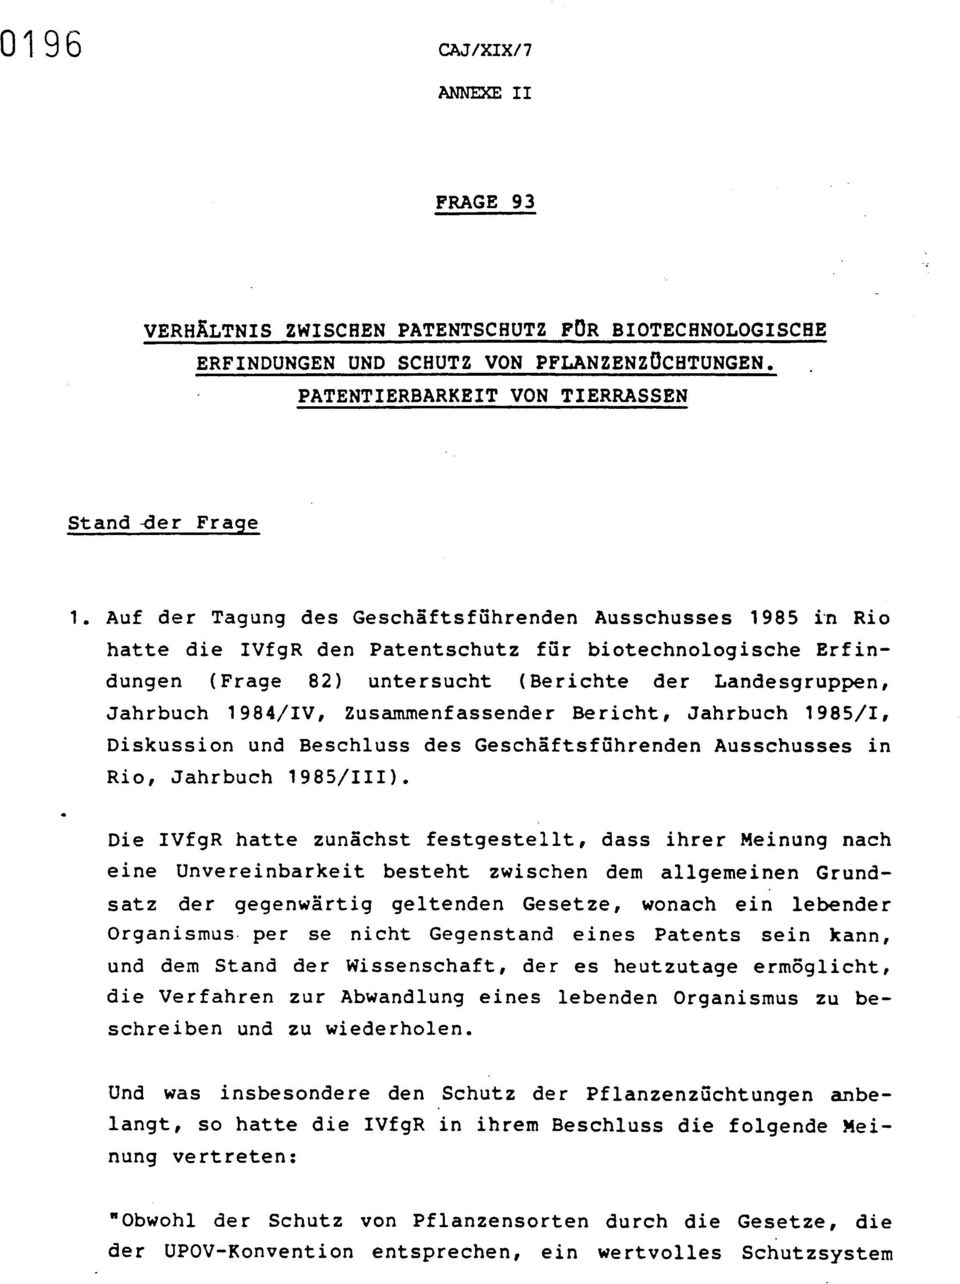 Zusammenfassender Bericht, Jahrbuch 1985/I, Diskussion und Beschluss des Geschaftsfuhrenden Ausschusses in Rio, Jahrbuch 1985/III).